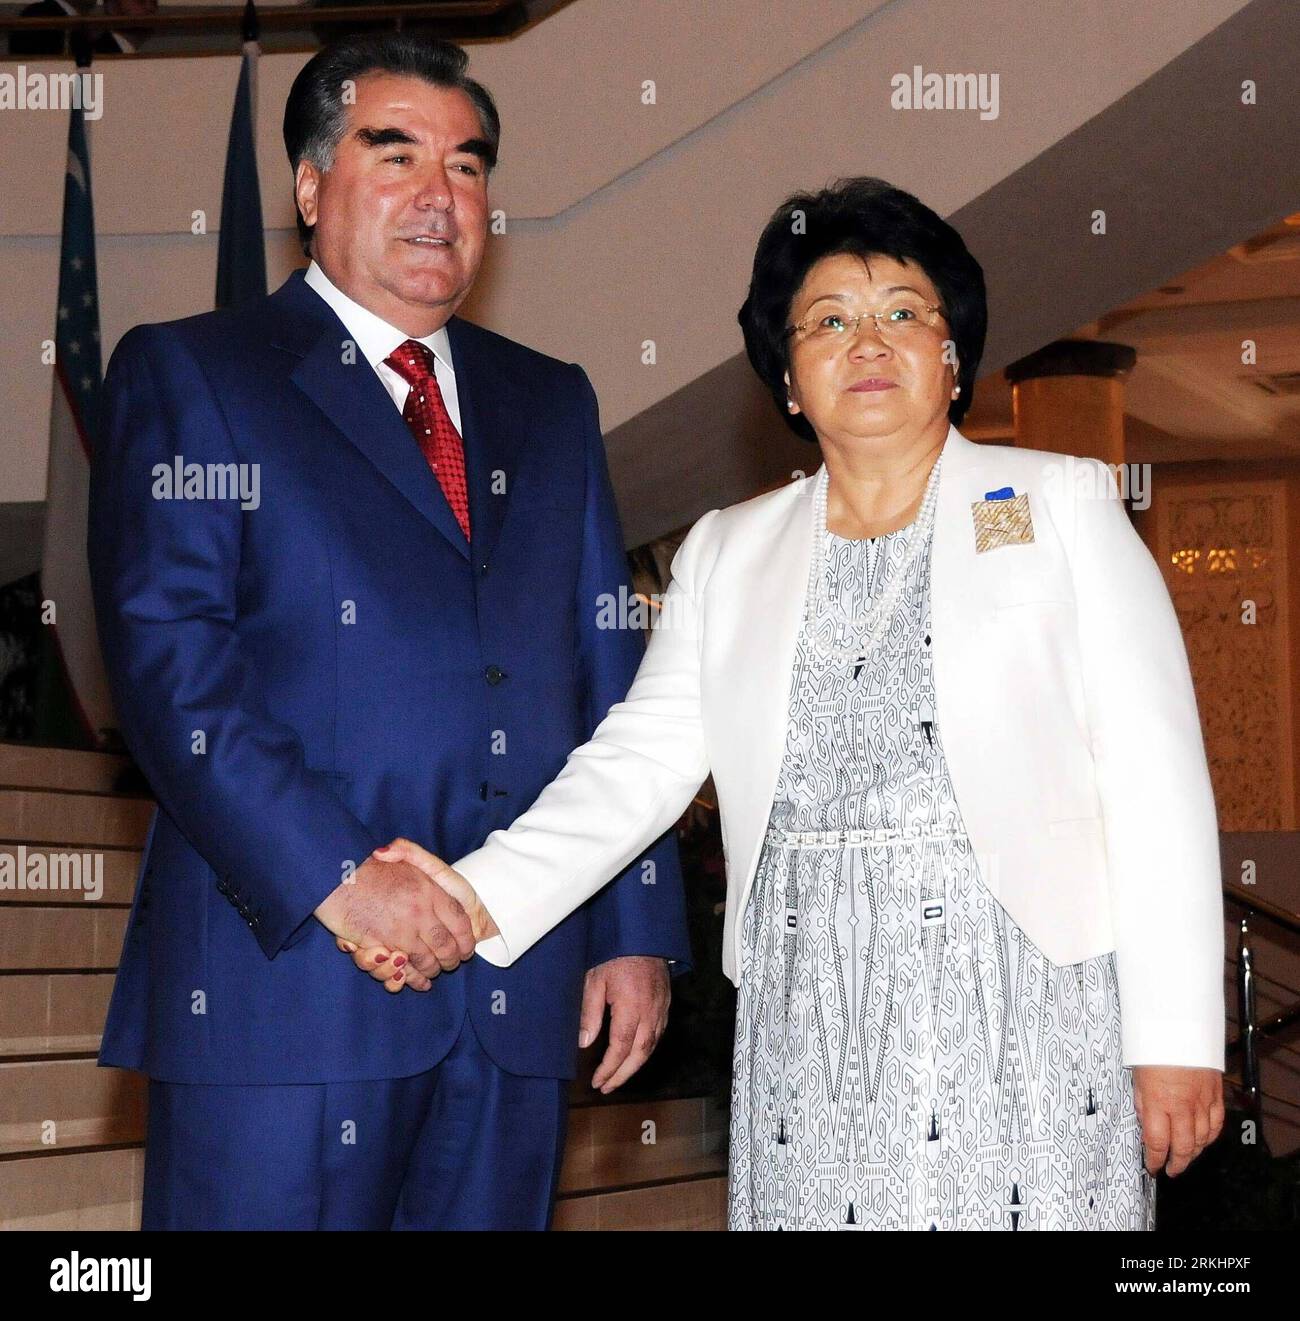 Bildnummer: 55890890 Datum: 03.09.2011 Copyright: imago/Xinhua (110903) -- DUSHANBE, 3 settembre 2011 (Xinhua) -- il presidente tagiko Imomali Rakhmon (L) stringe la mano al presidente kirghiso Rosa Otunbayeva nella capitale tagika Dushanbe il 3 settembre 2011. I leader della Comunità degli Stati indipendenti (CSI) hanno iniziato i loro colloqui al vertice sabato nella capitale tagika di Dushanbe, in occasione del ventesimo anniversario del gruppo. Si prevede che i partecipanti esaminino la CSI negli ultimi 20 anni e disegnino un progetto per il suo sviluppo futuro. (Xinhua/Sadat) (nxl) VERTICE TAGIKISTAN-DUSHANBE-CIS PUBLICATIONxNOTxINxCHN Foto Stock